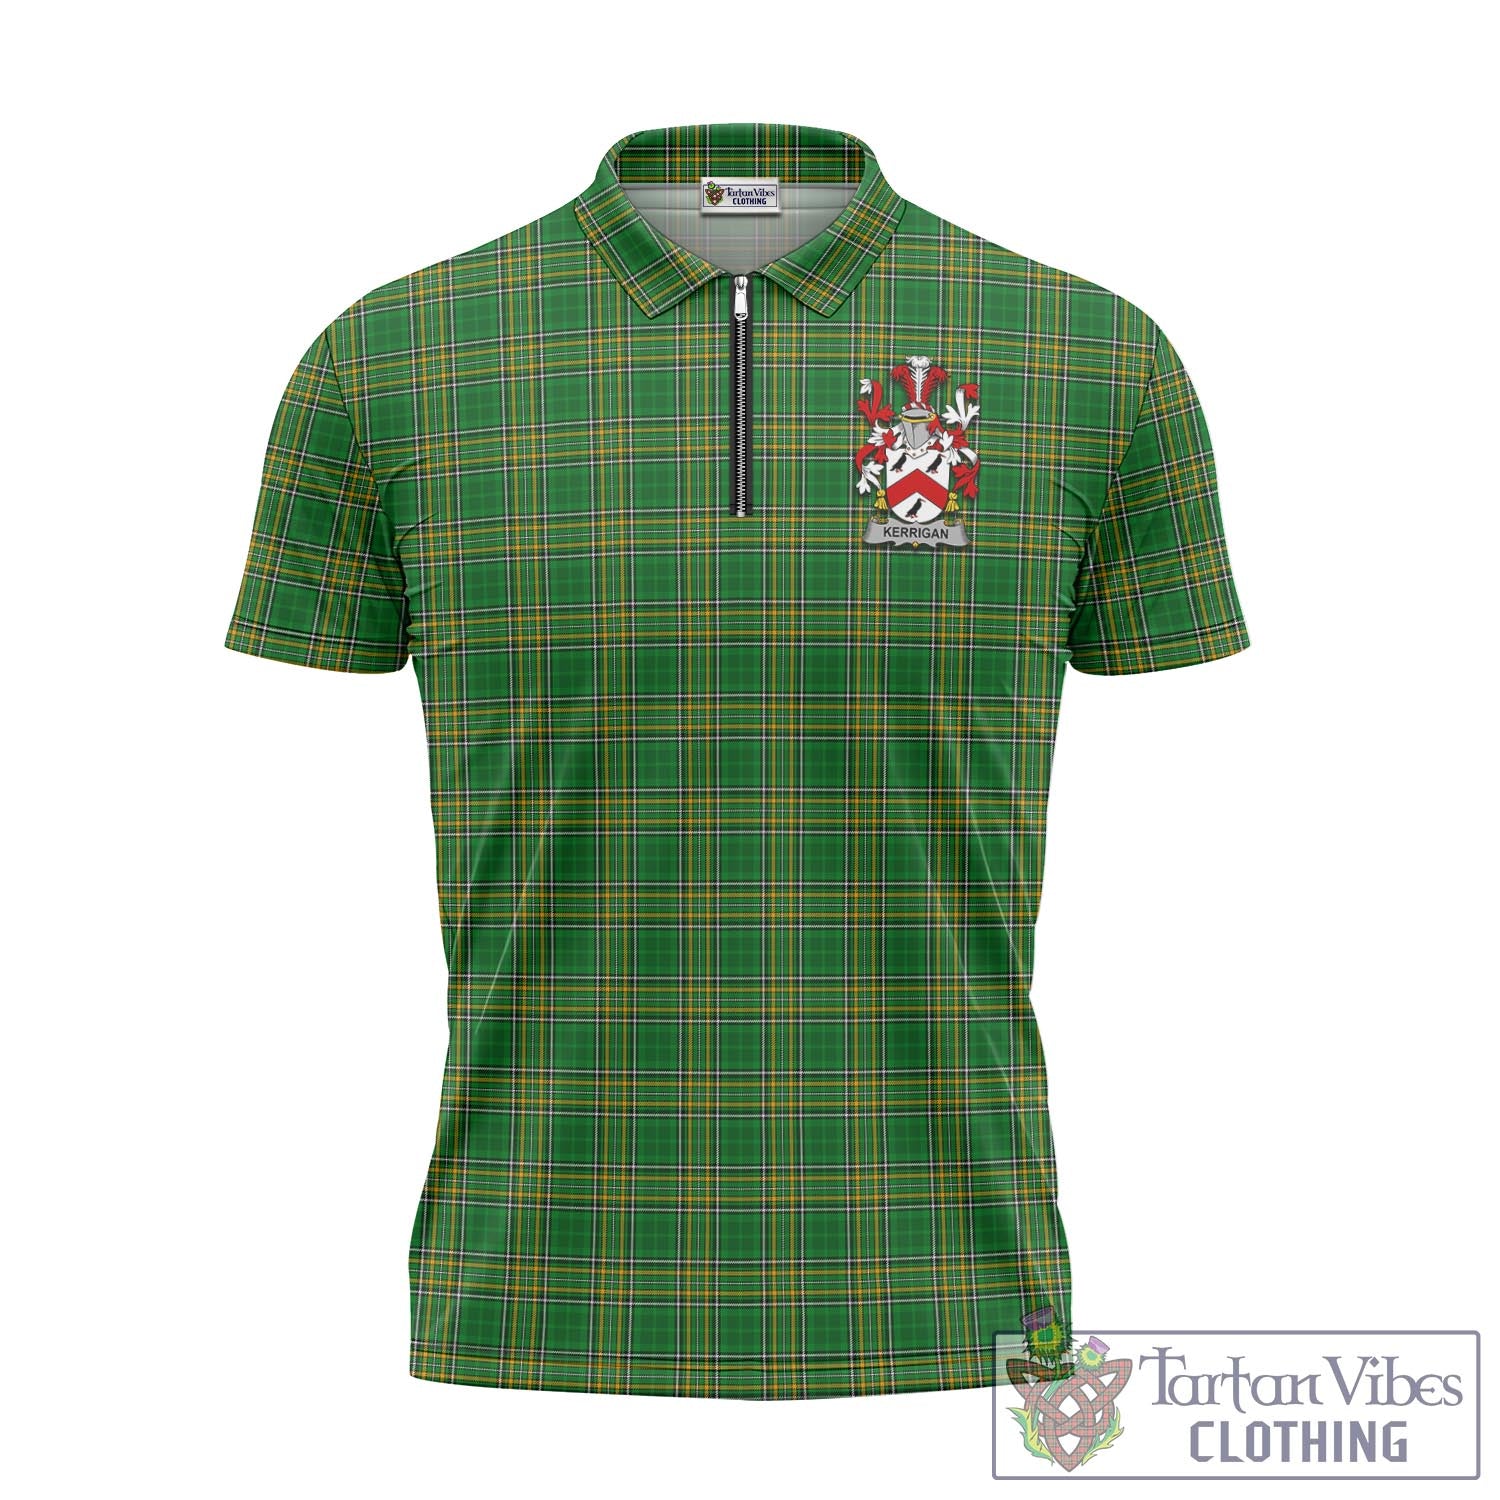 Tartan Vibes Clothing Kerrigan Ireland Clan Tartan Zipper Polo Shirt with Coat of Arms